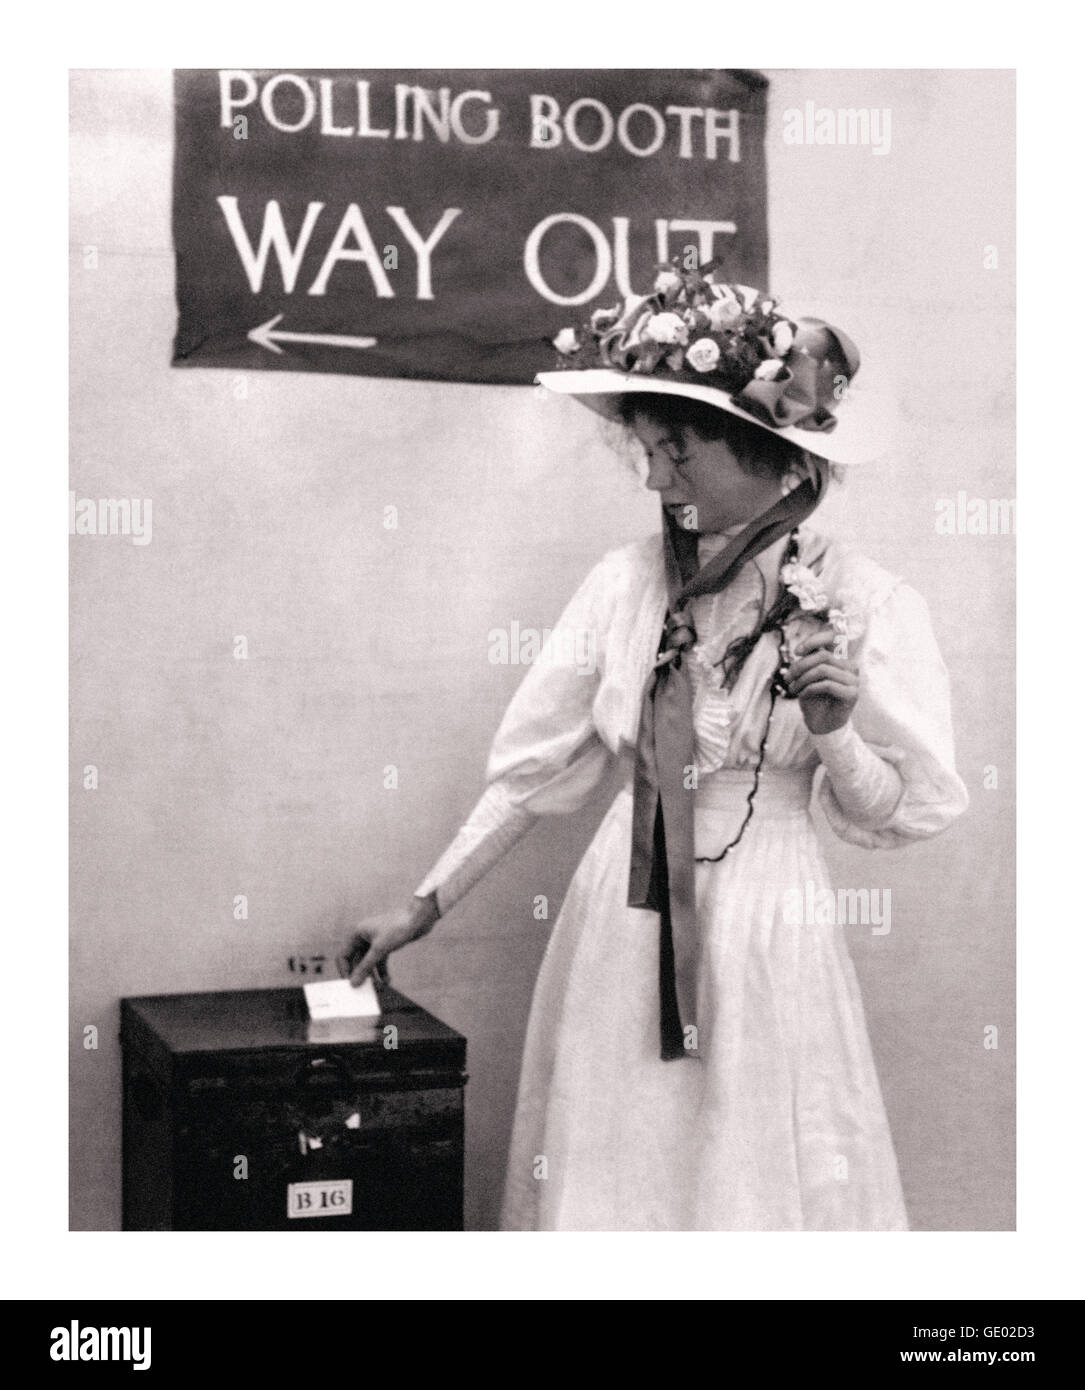 Movimiento Suffragette Emmeline Pankhurst en la cabina electoral circa 1910. Ella era un líder motivador del movimiento que obtuvo el voto de la mujer Foto de stock